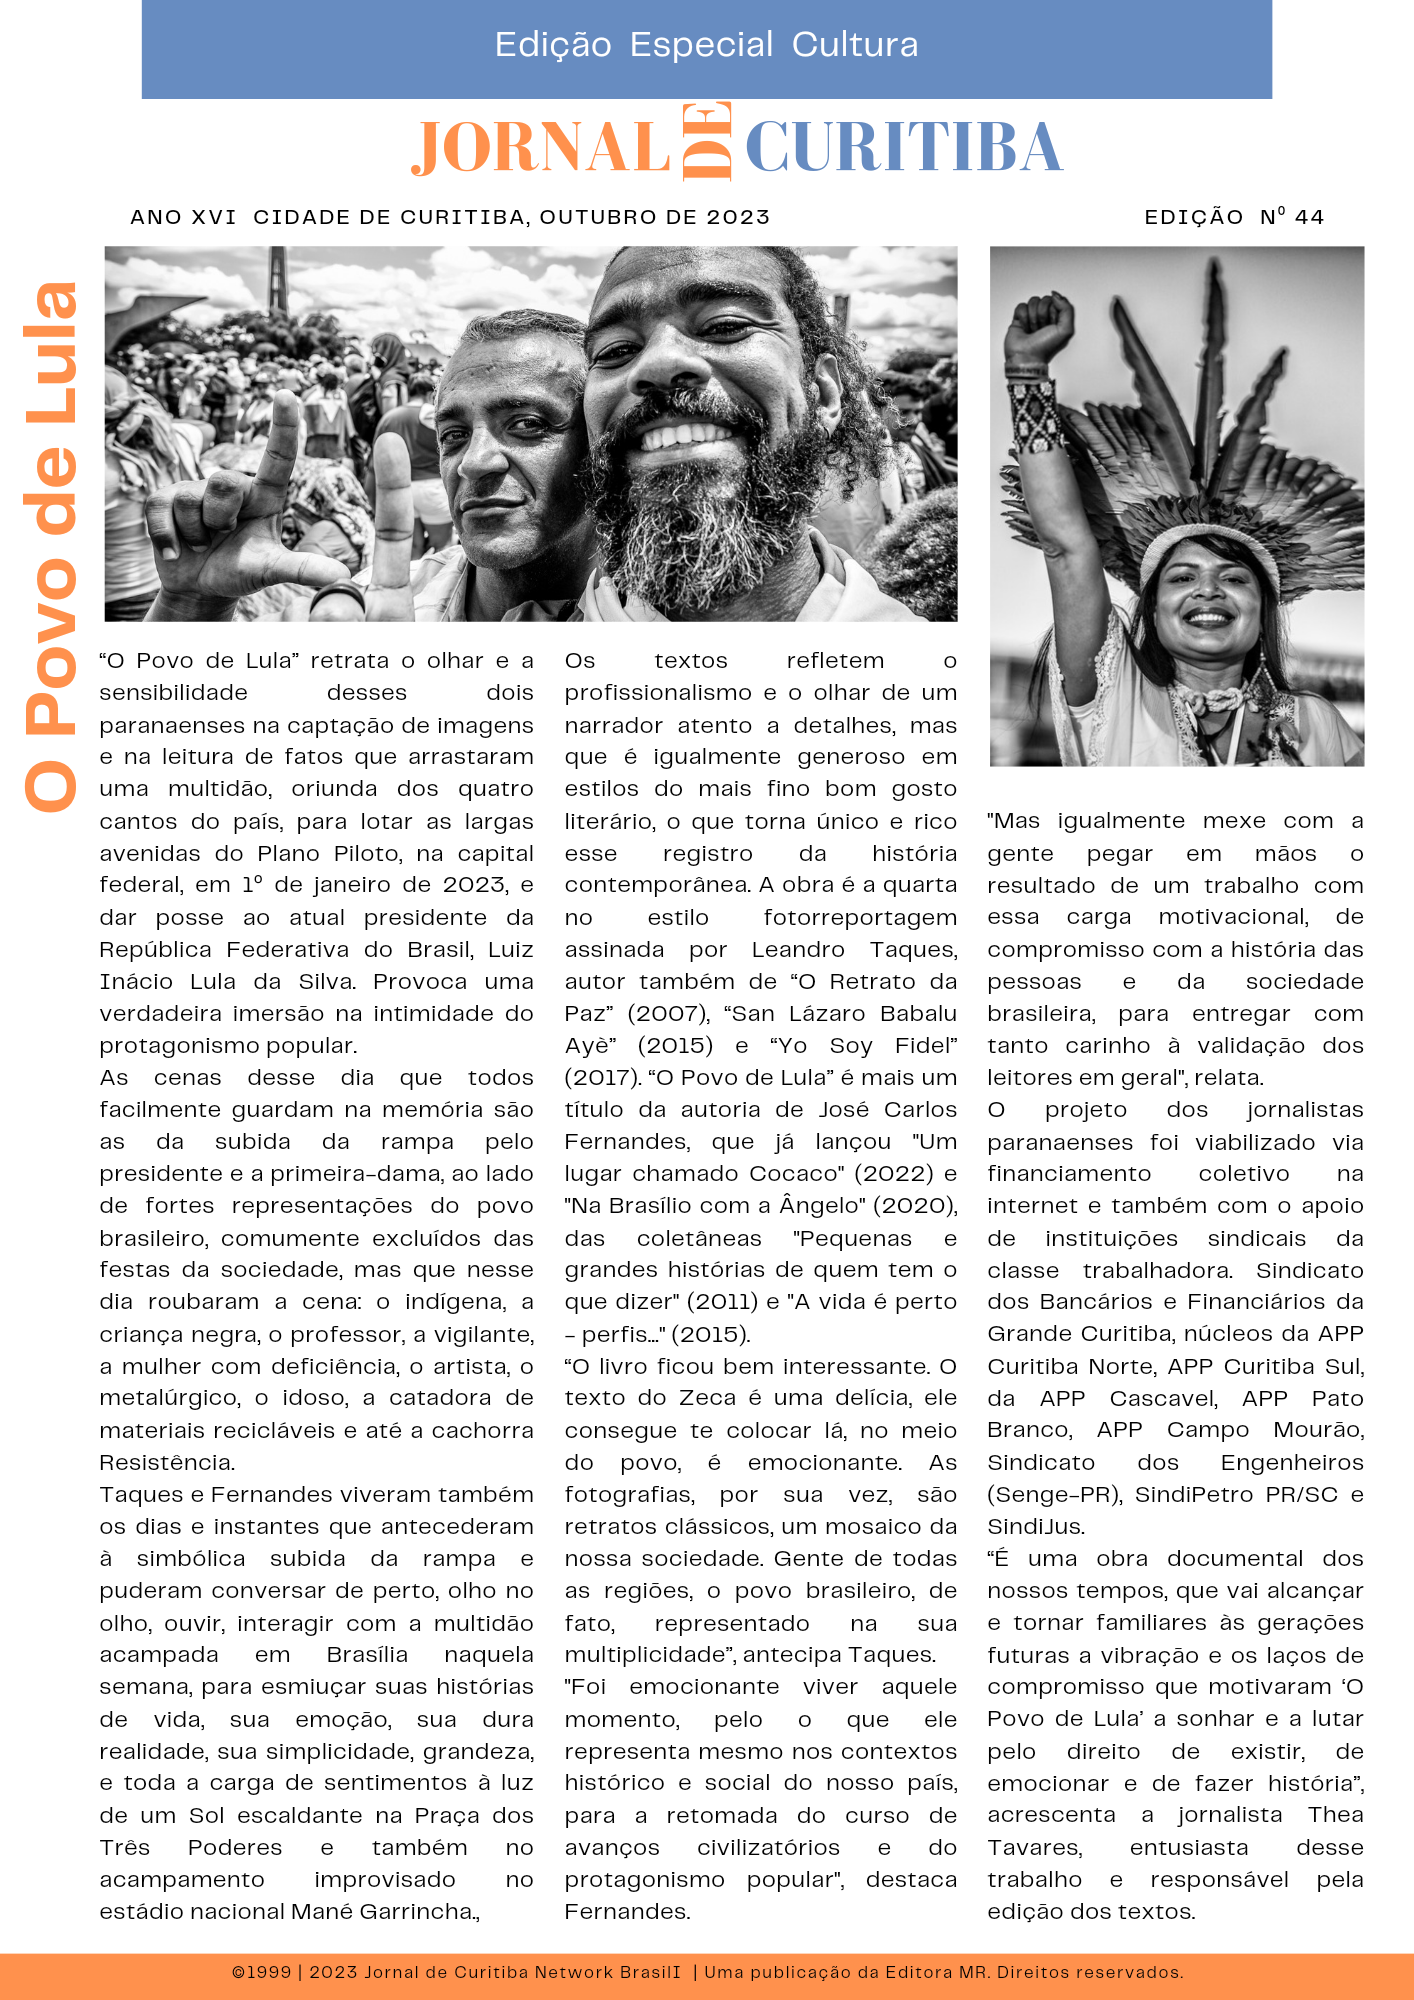 Jornal de Curitiba: “O Povo de Lula”: uma imersão inédita na intimidade do  protagonismo popular